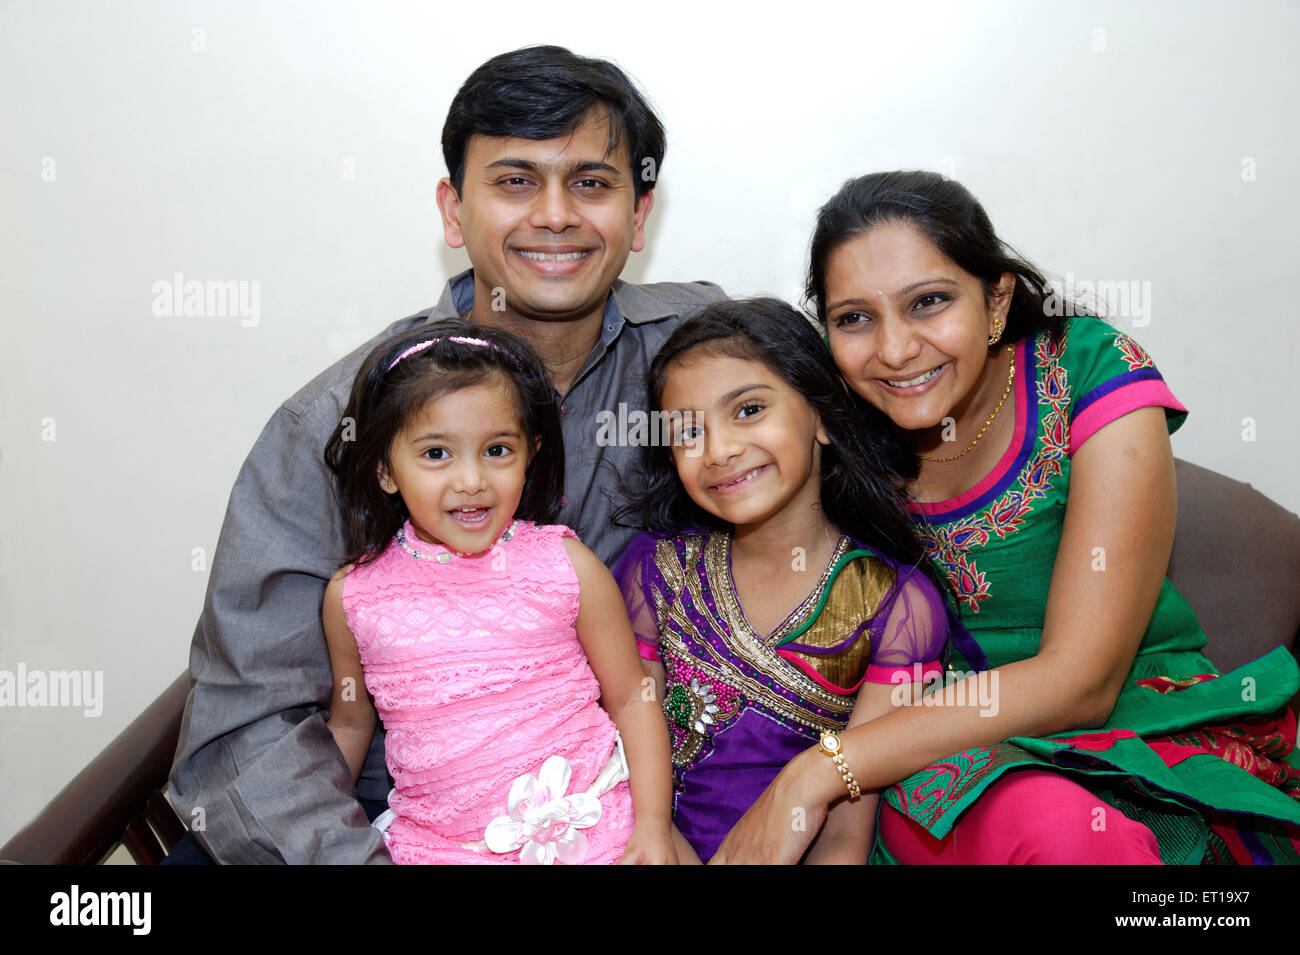 Los padres de familia feliz con dos hijas señor# 736J 736K 736L 736LA Foto de stock